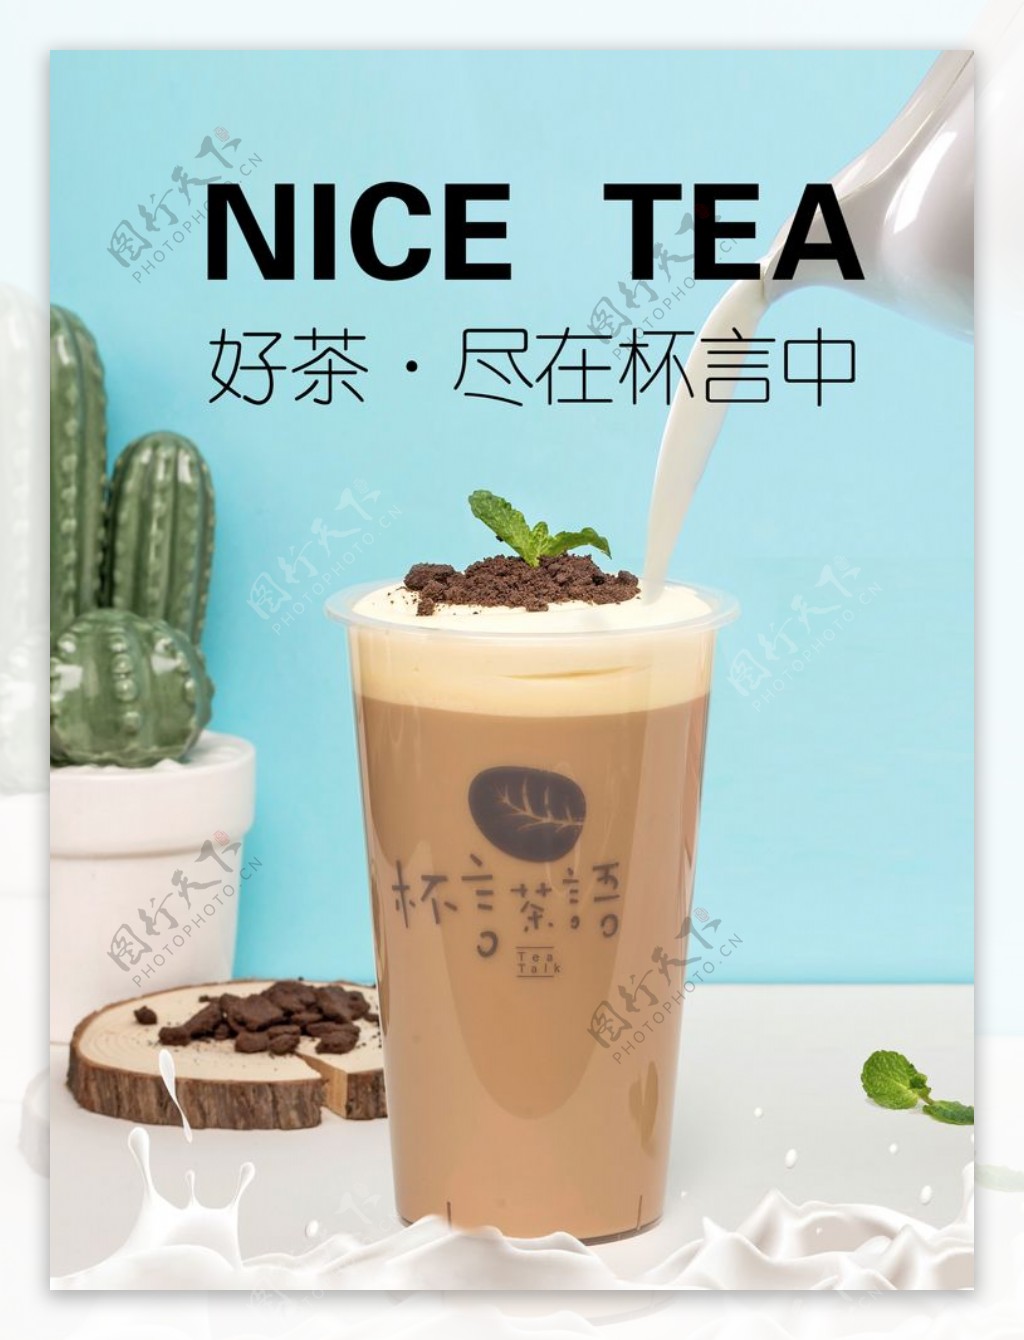 奶茶促销海报